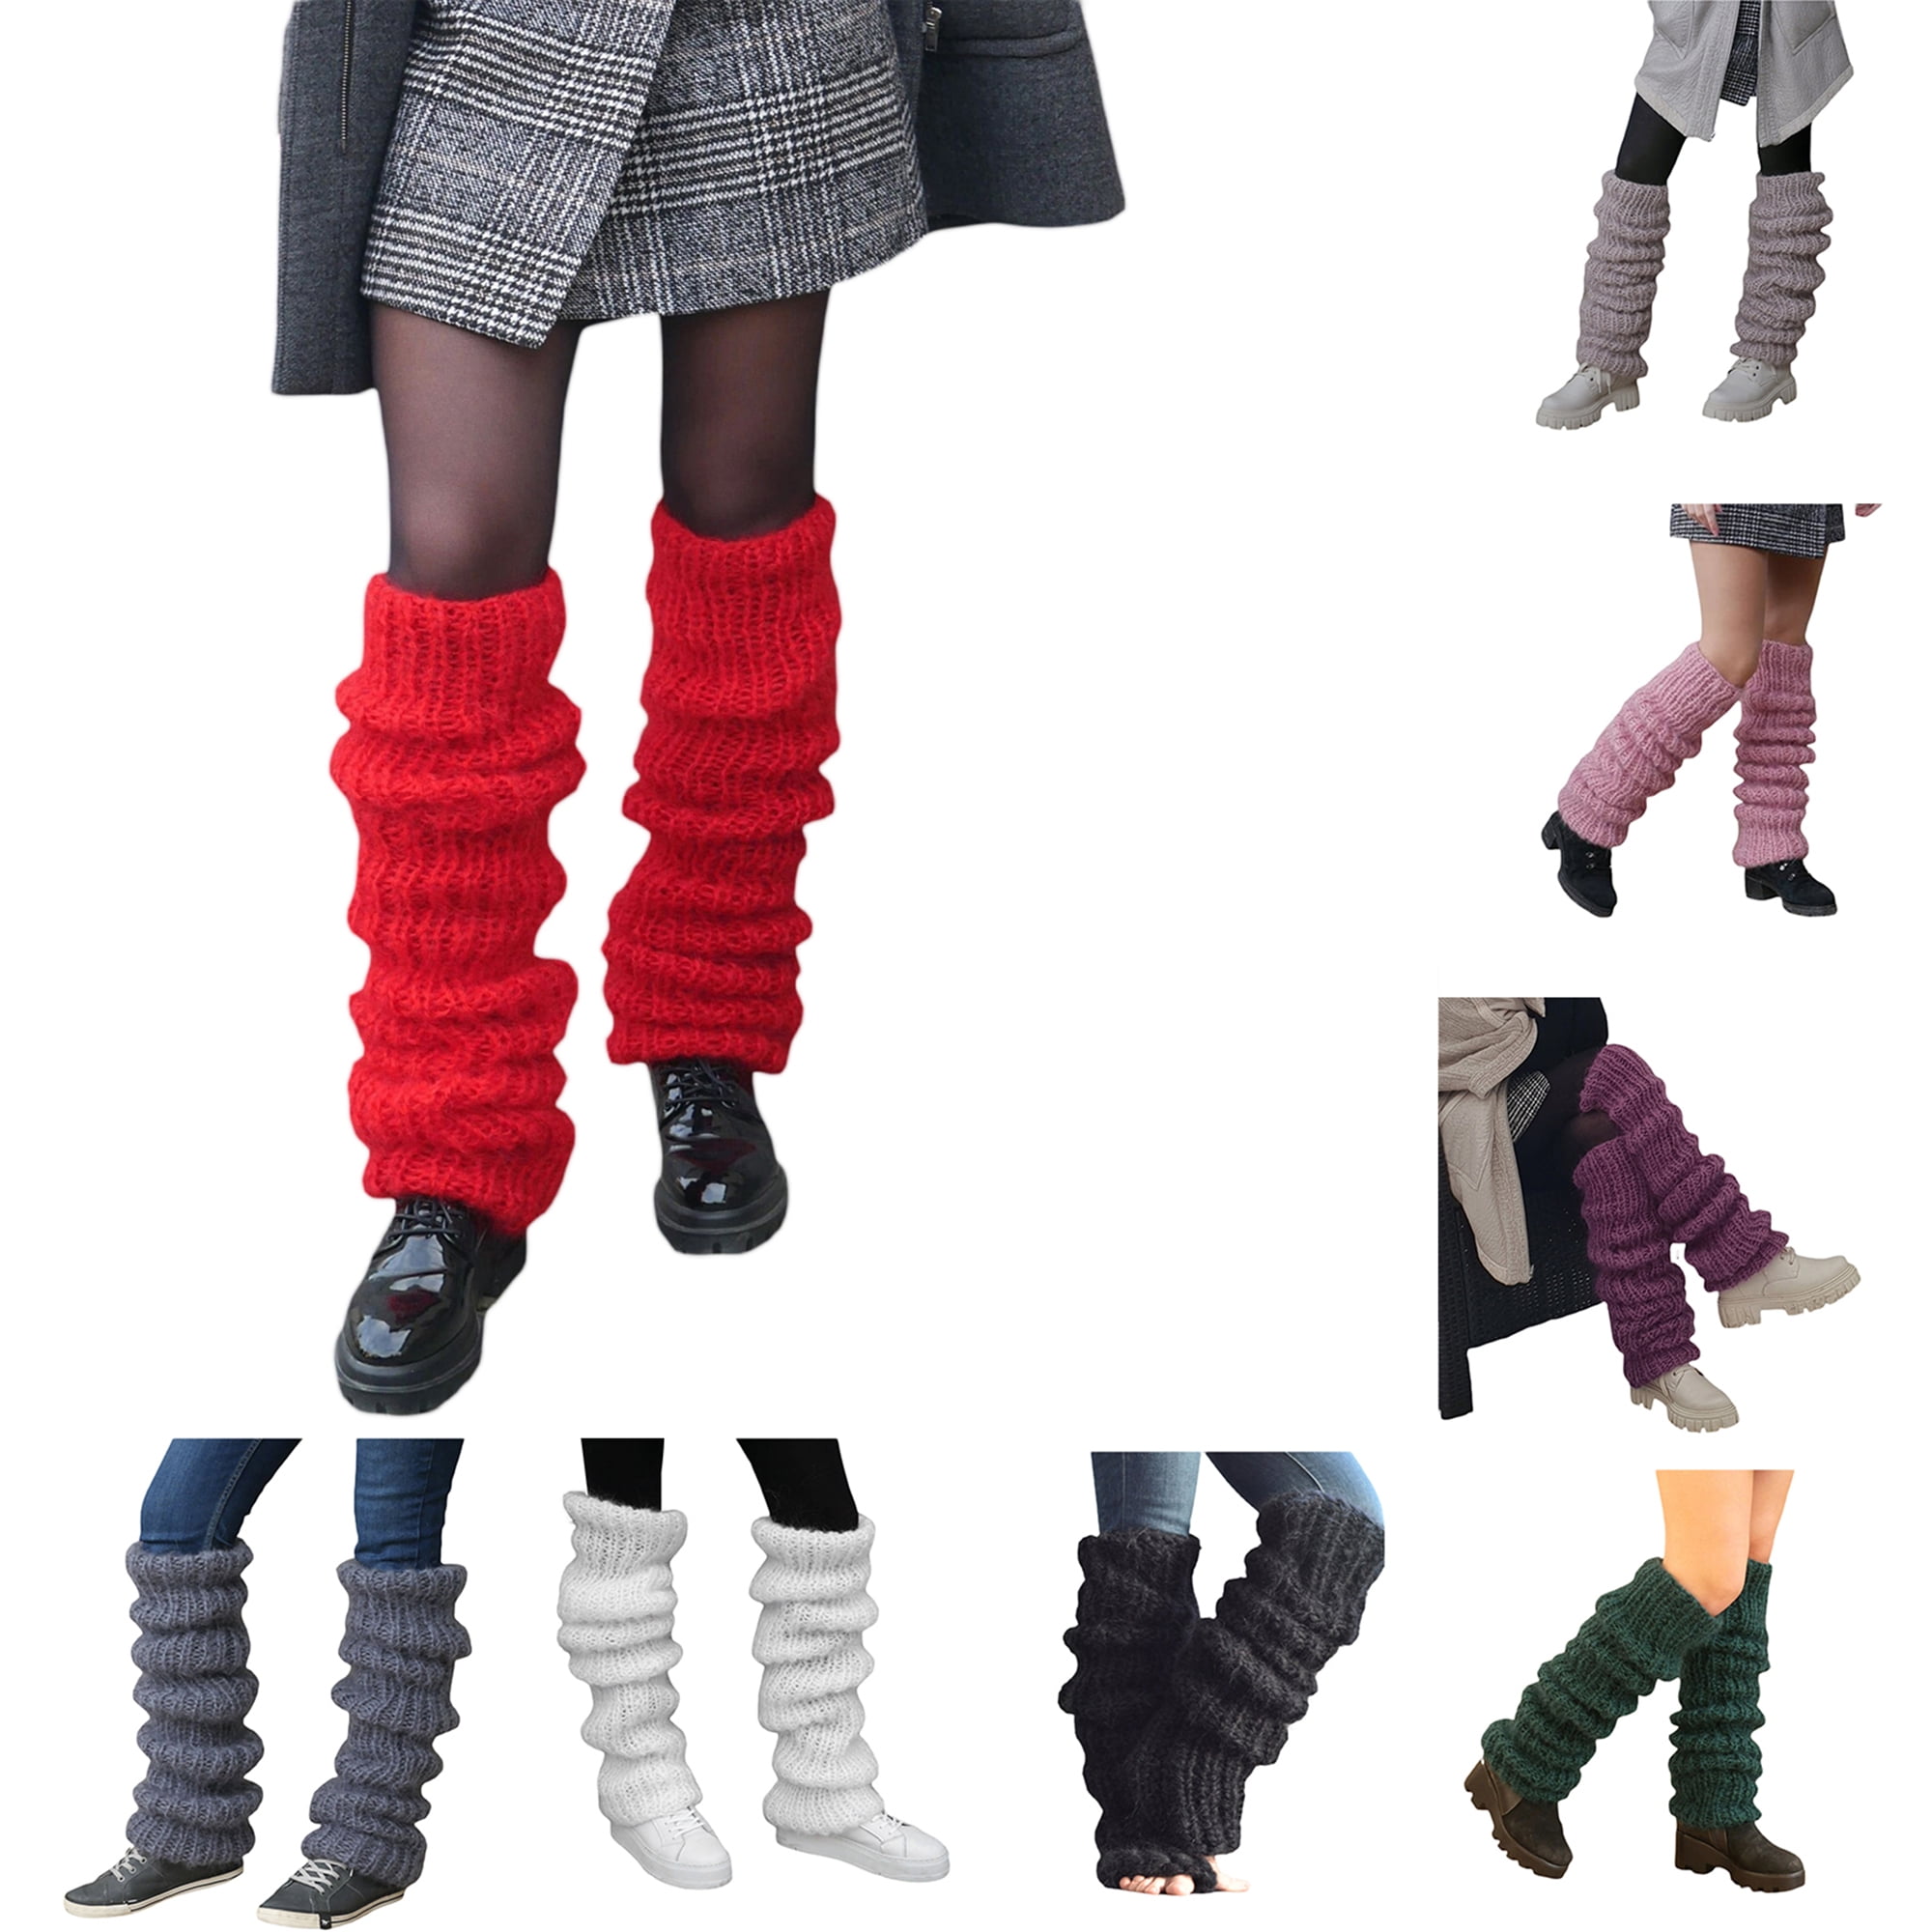 wybzd Women Leg Warmers Dark Aesthetic Long Leg Socks Warm Adult Junior  Girls 90s Boot Socks Party Casual Streetwear 